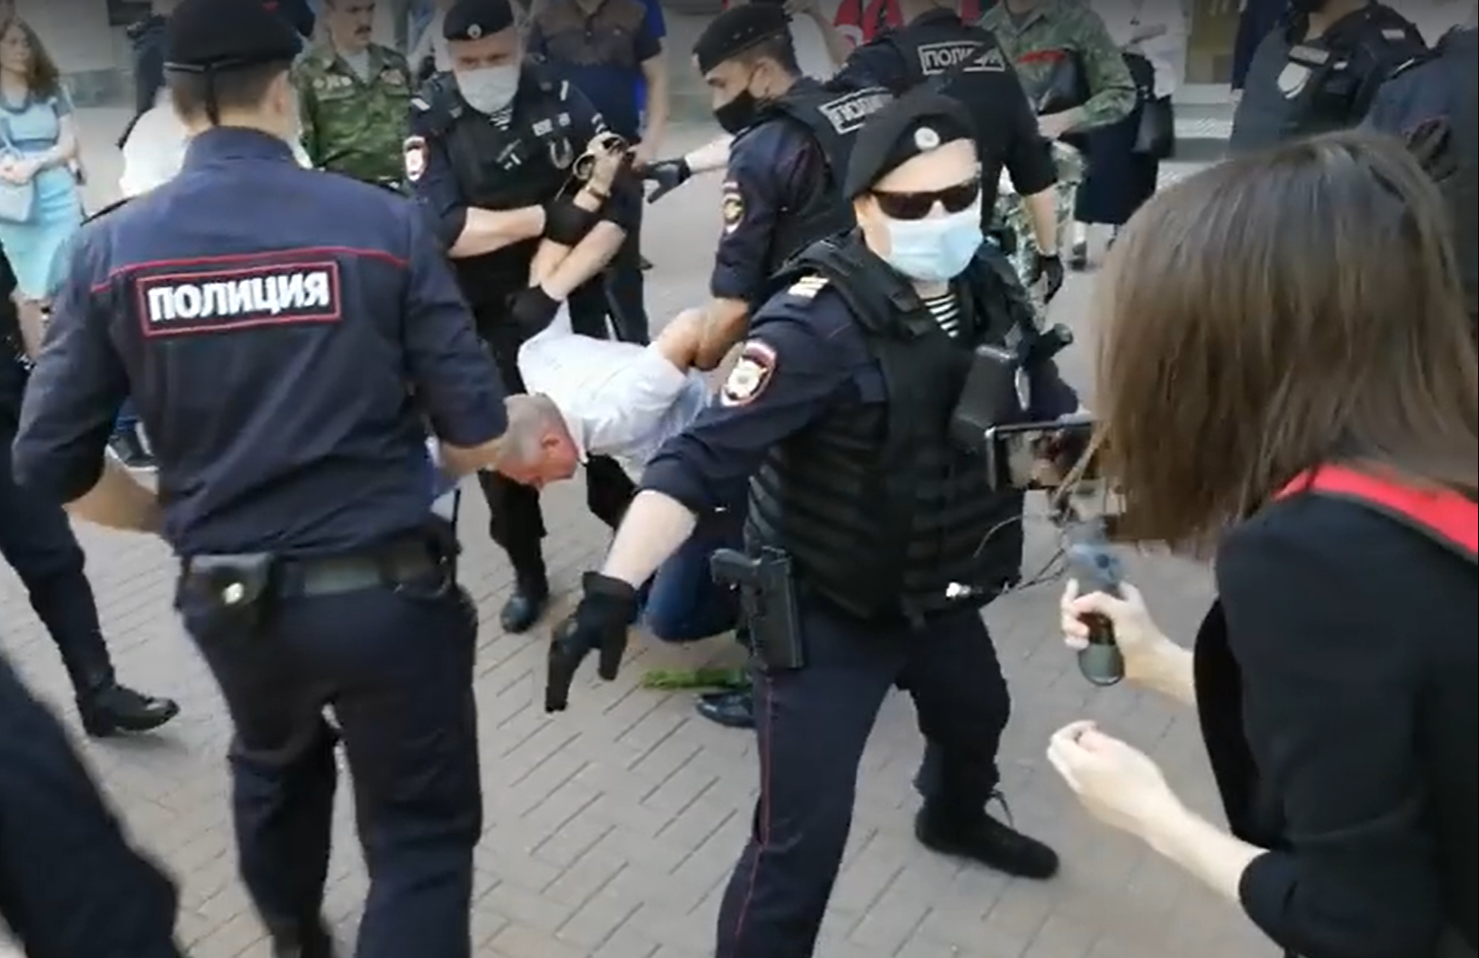 Задержание участника акции против «фашизации России» 22 июня 2020 года. Скриншот видео Николая Игрокова / fb.com